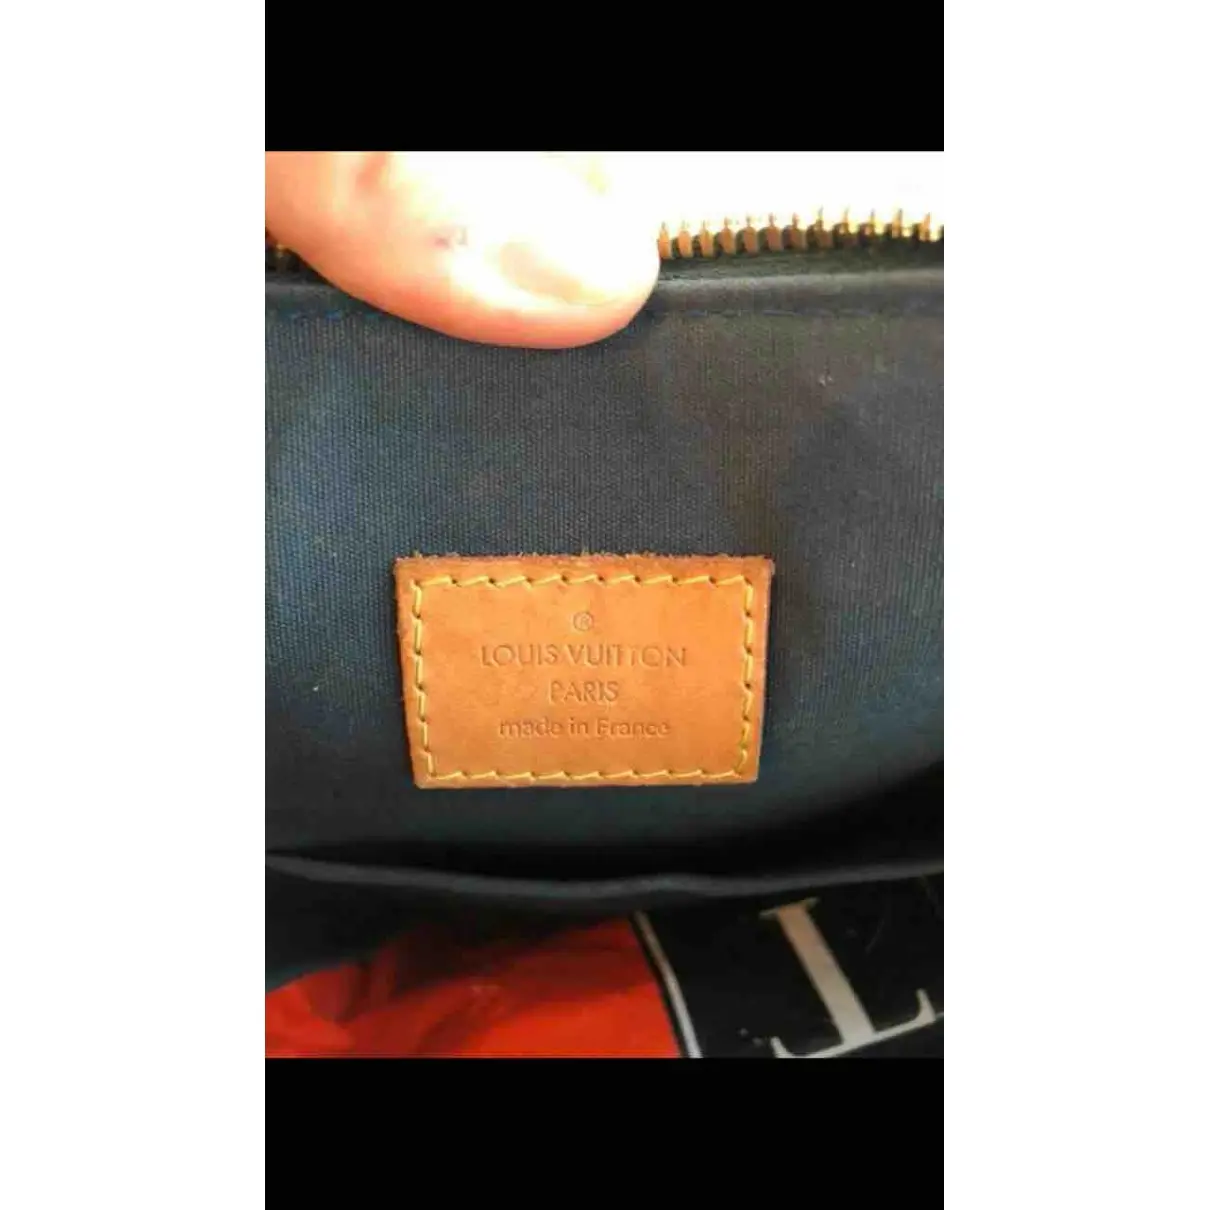 Louis Vuitton Alma patent leather handbag for sale